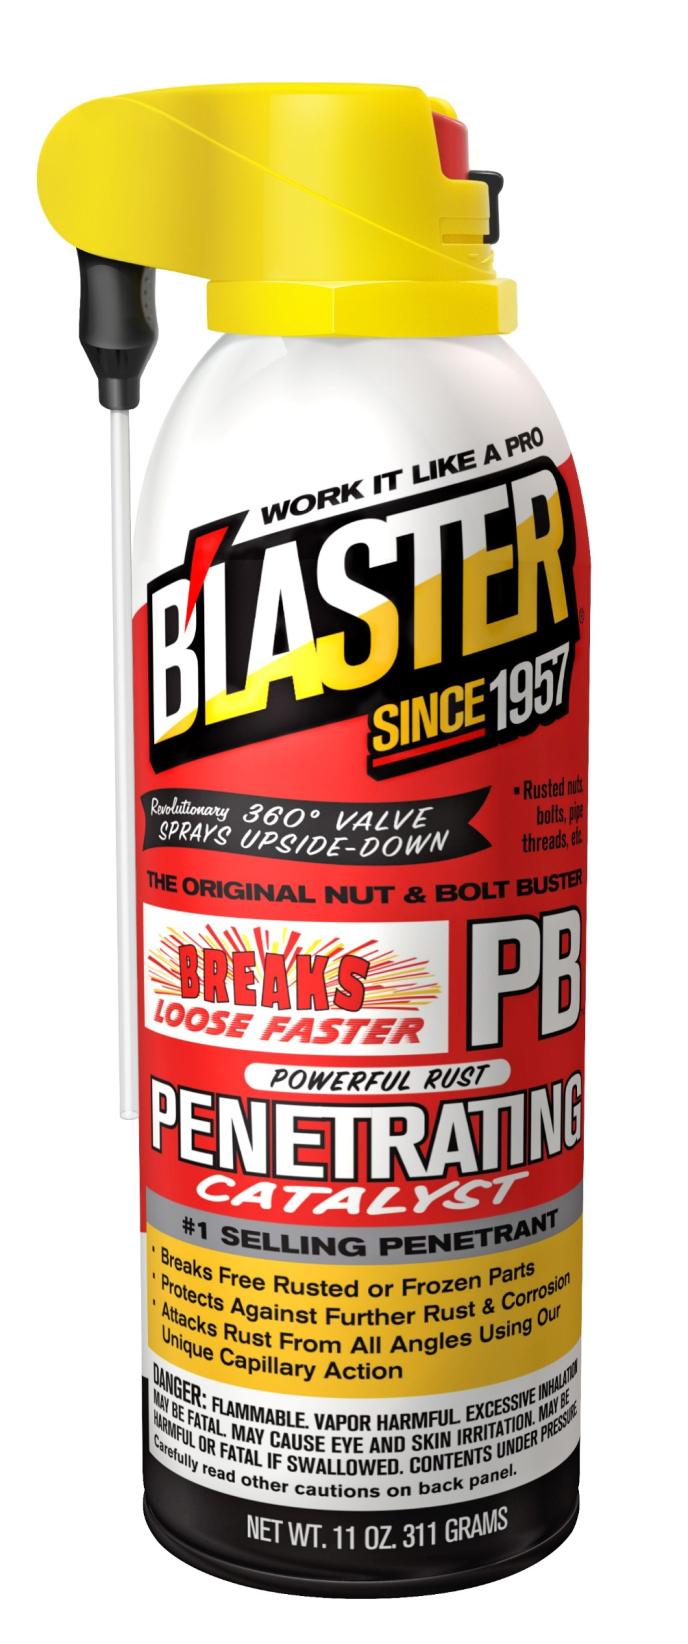 PB B'laster Original Nut & Bolt Buster